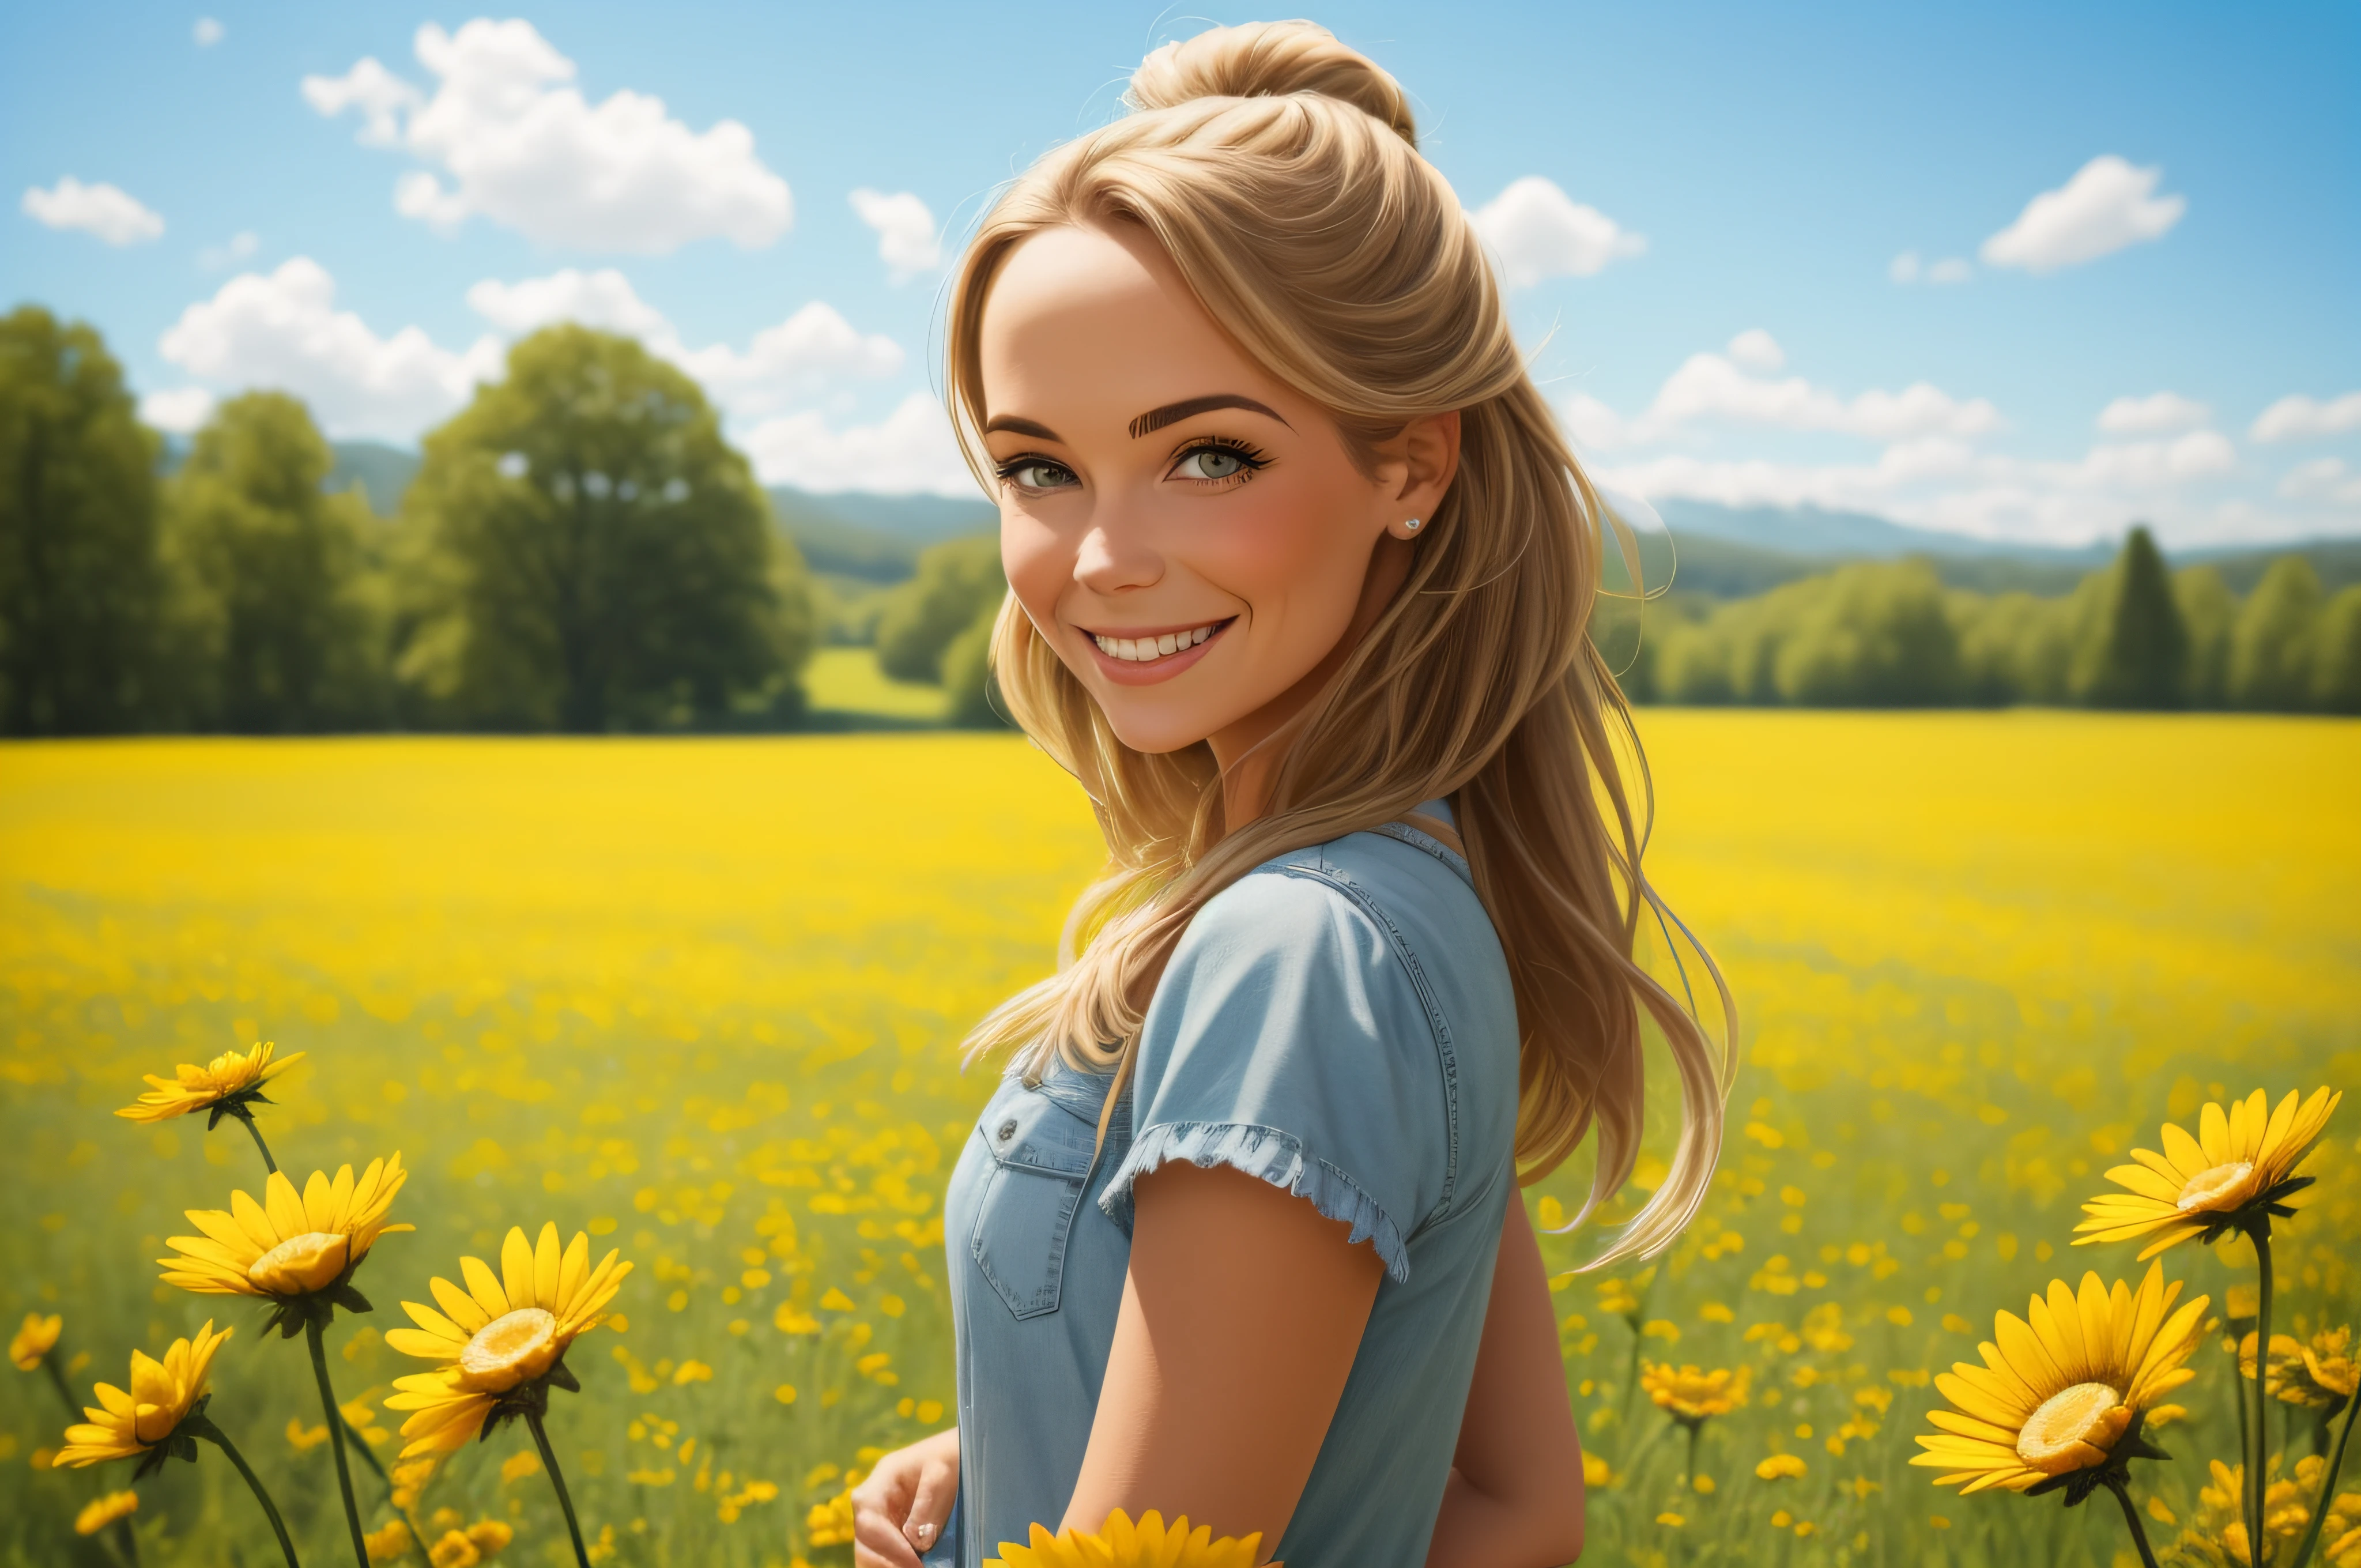 ภาพผู้หญิงยิ้มยืนอยู่ในทุ่งหญ้าฤดูร้อน, สีสันสดใสแห่งความสุข, สีสัน